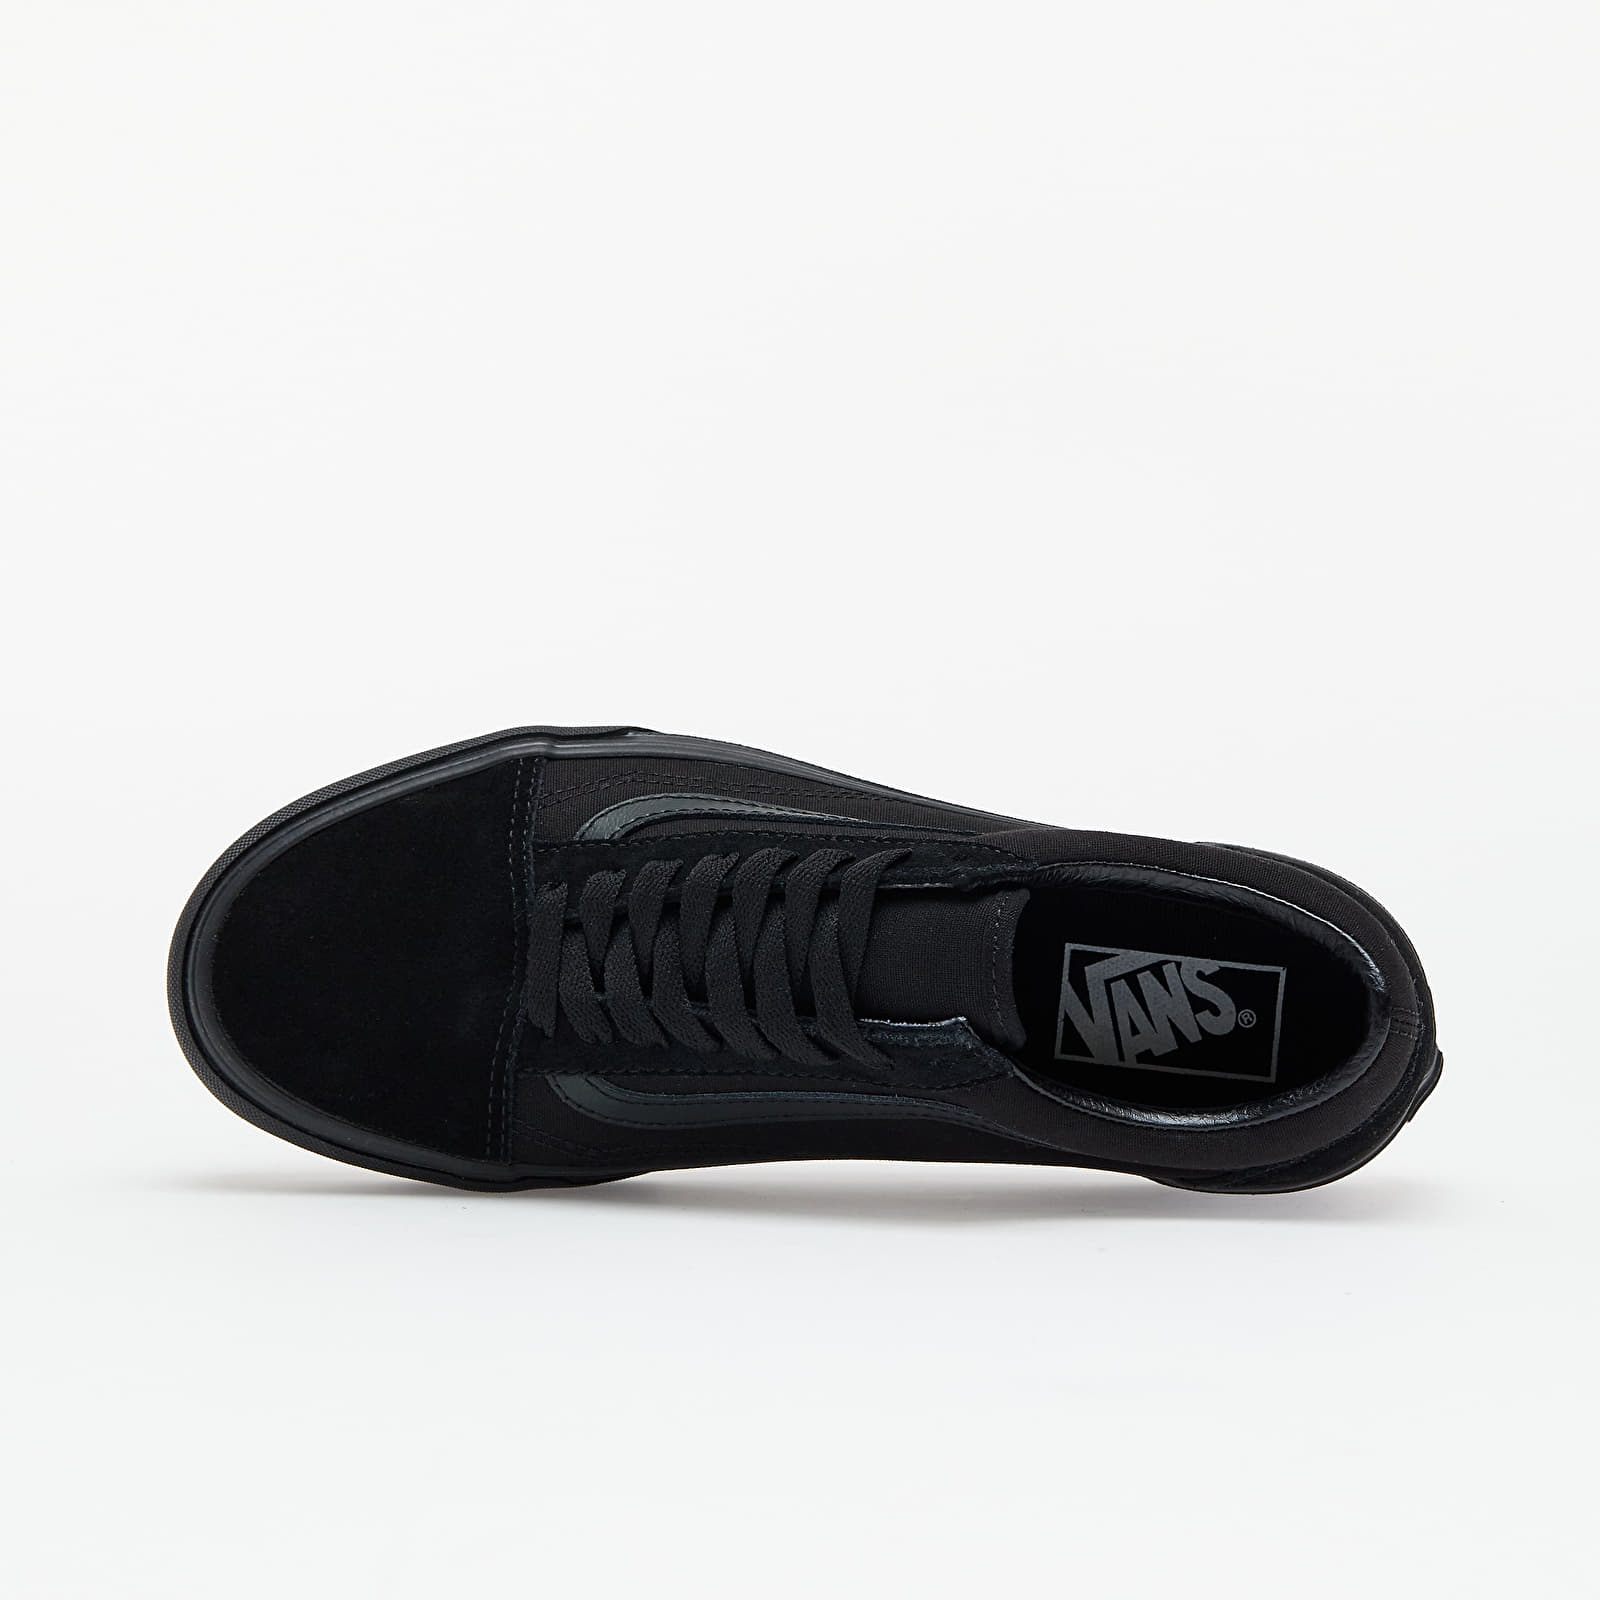 Men's shoes Vans Old Skool Platform Black/ Black